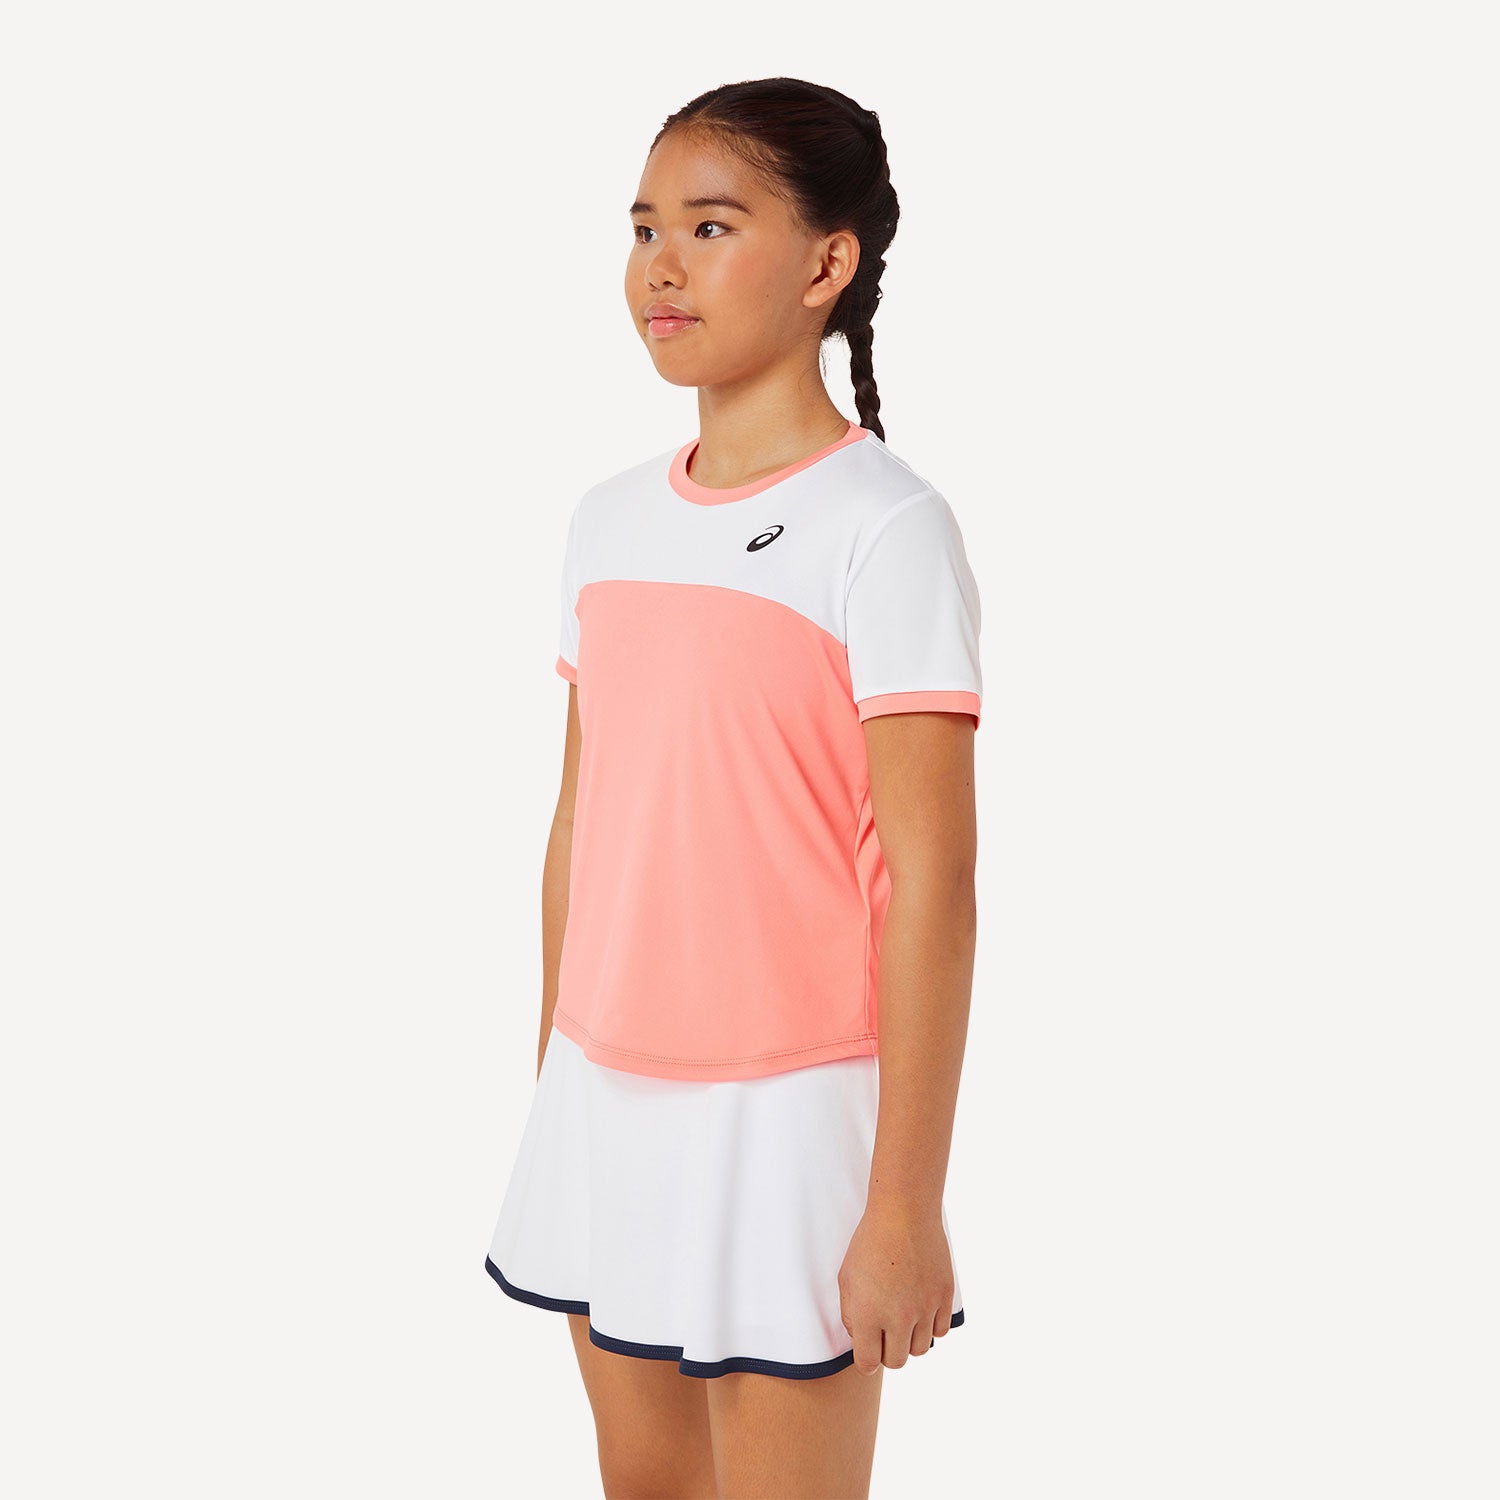 ASICS Girls' Tennis Shirt Orange (3)